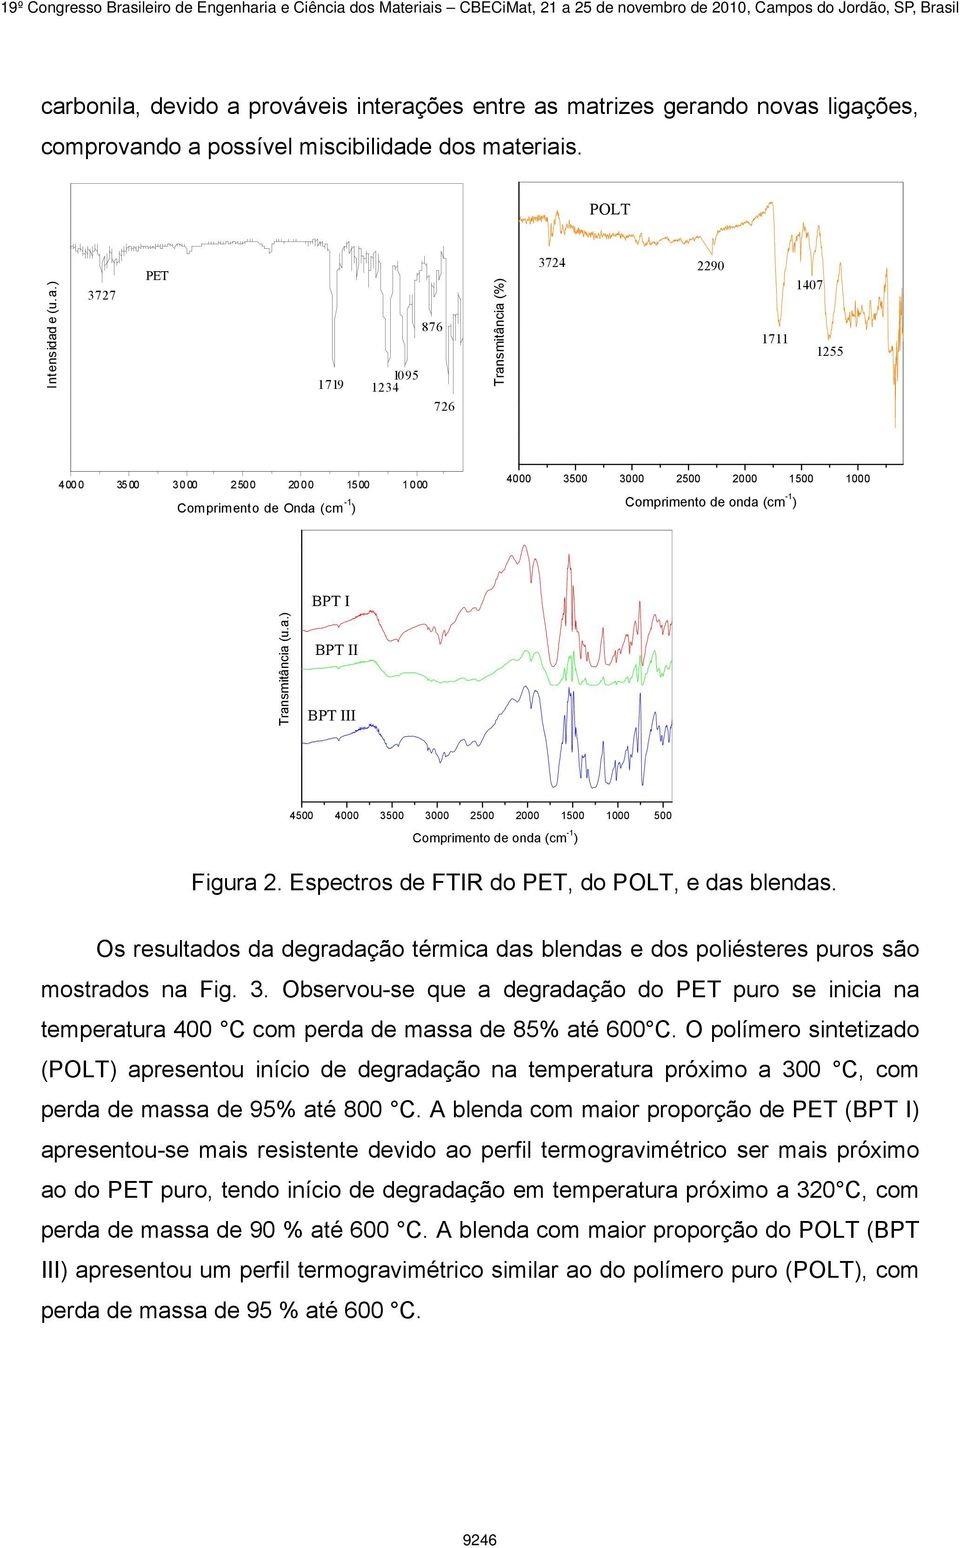 Espectros de FTIR do PET, do POLT, e das blendas. Os resultados da degradação térmica das blendas e dos poliésteres puros são mostrados na Fig. 3.